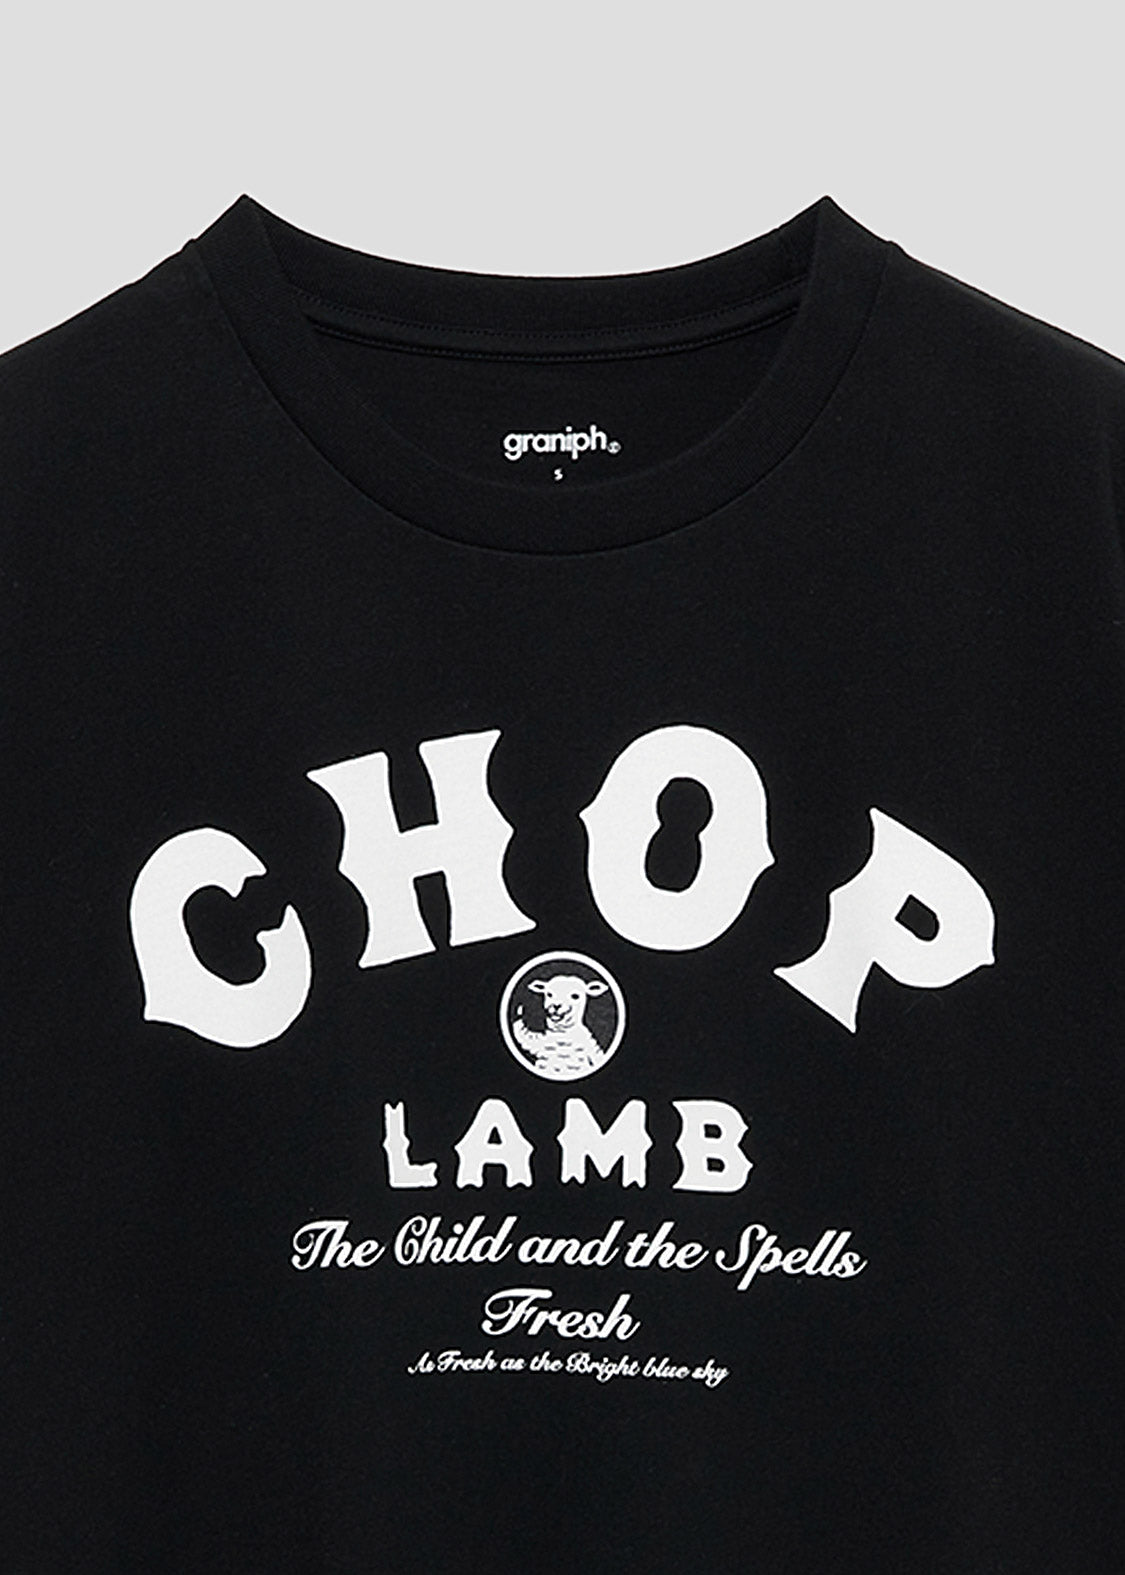 Lamb Chop LOGO 2